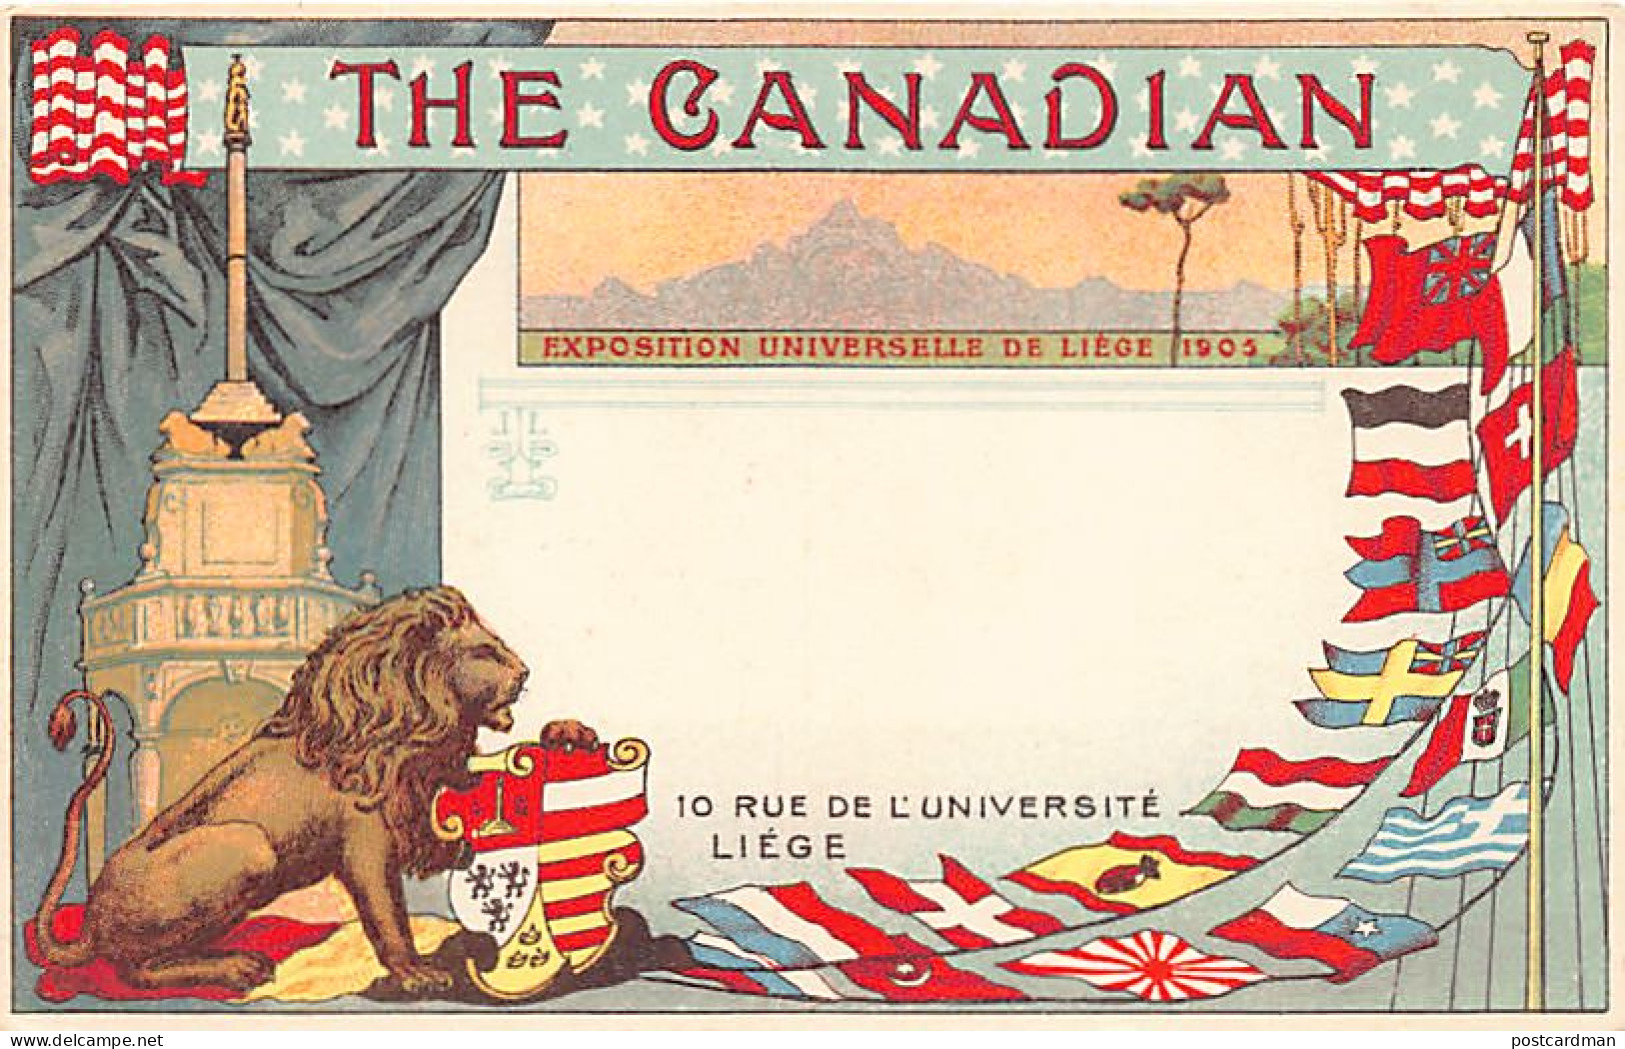 Exposition Universelle De Liège De 1905 - The Canadian - 10 Rue De L'Université - Liege